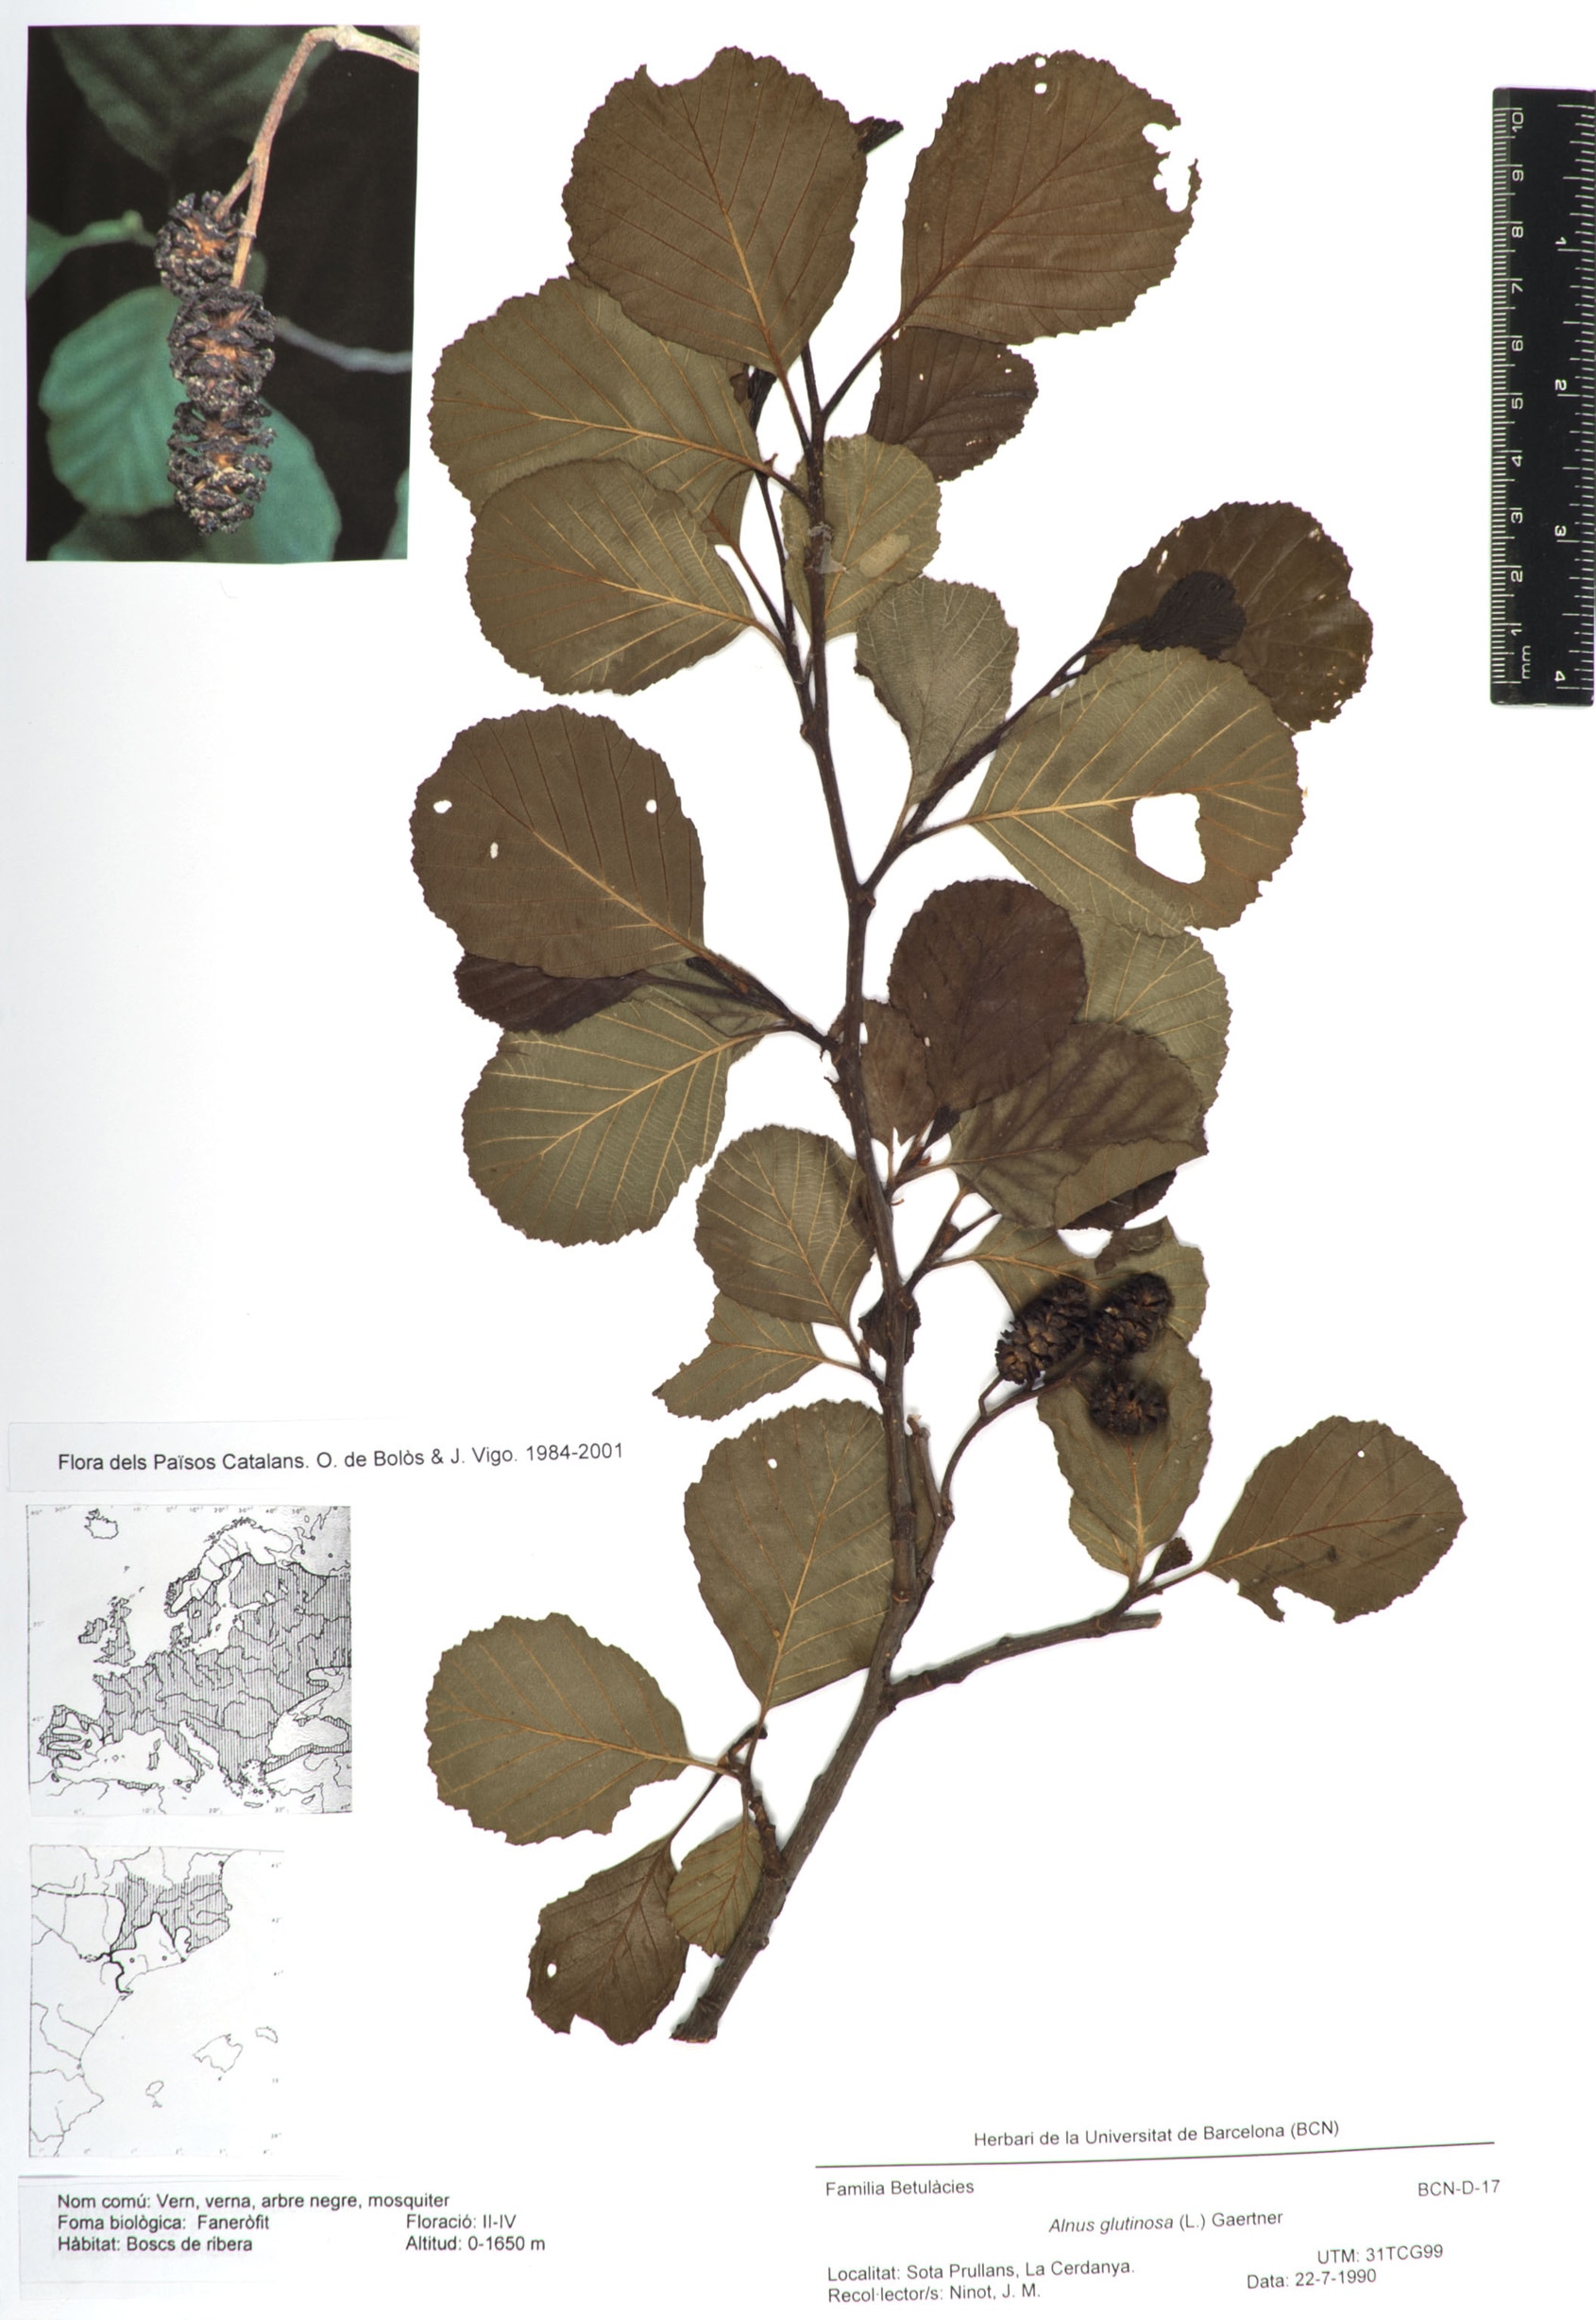 Alnus glutinosa (L.) Gaertn. (Vern, verna, arbre negre, mosquiter)